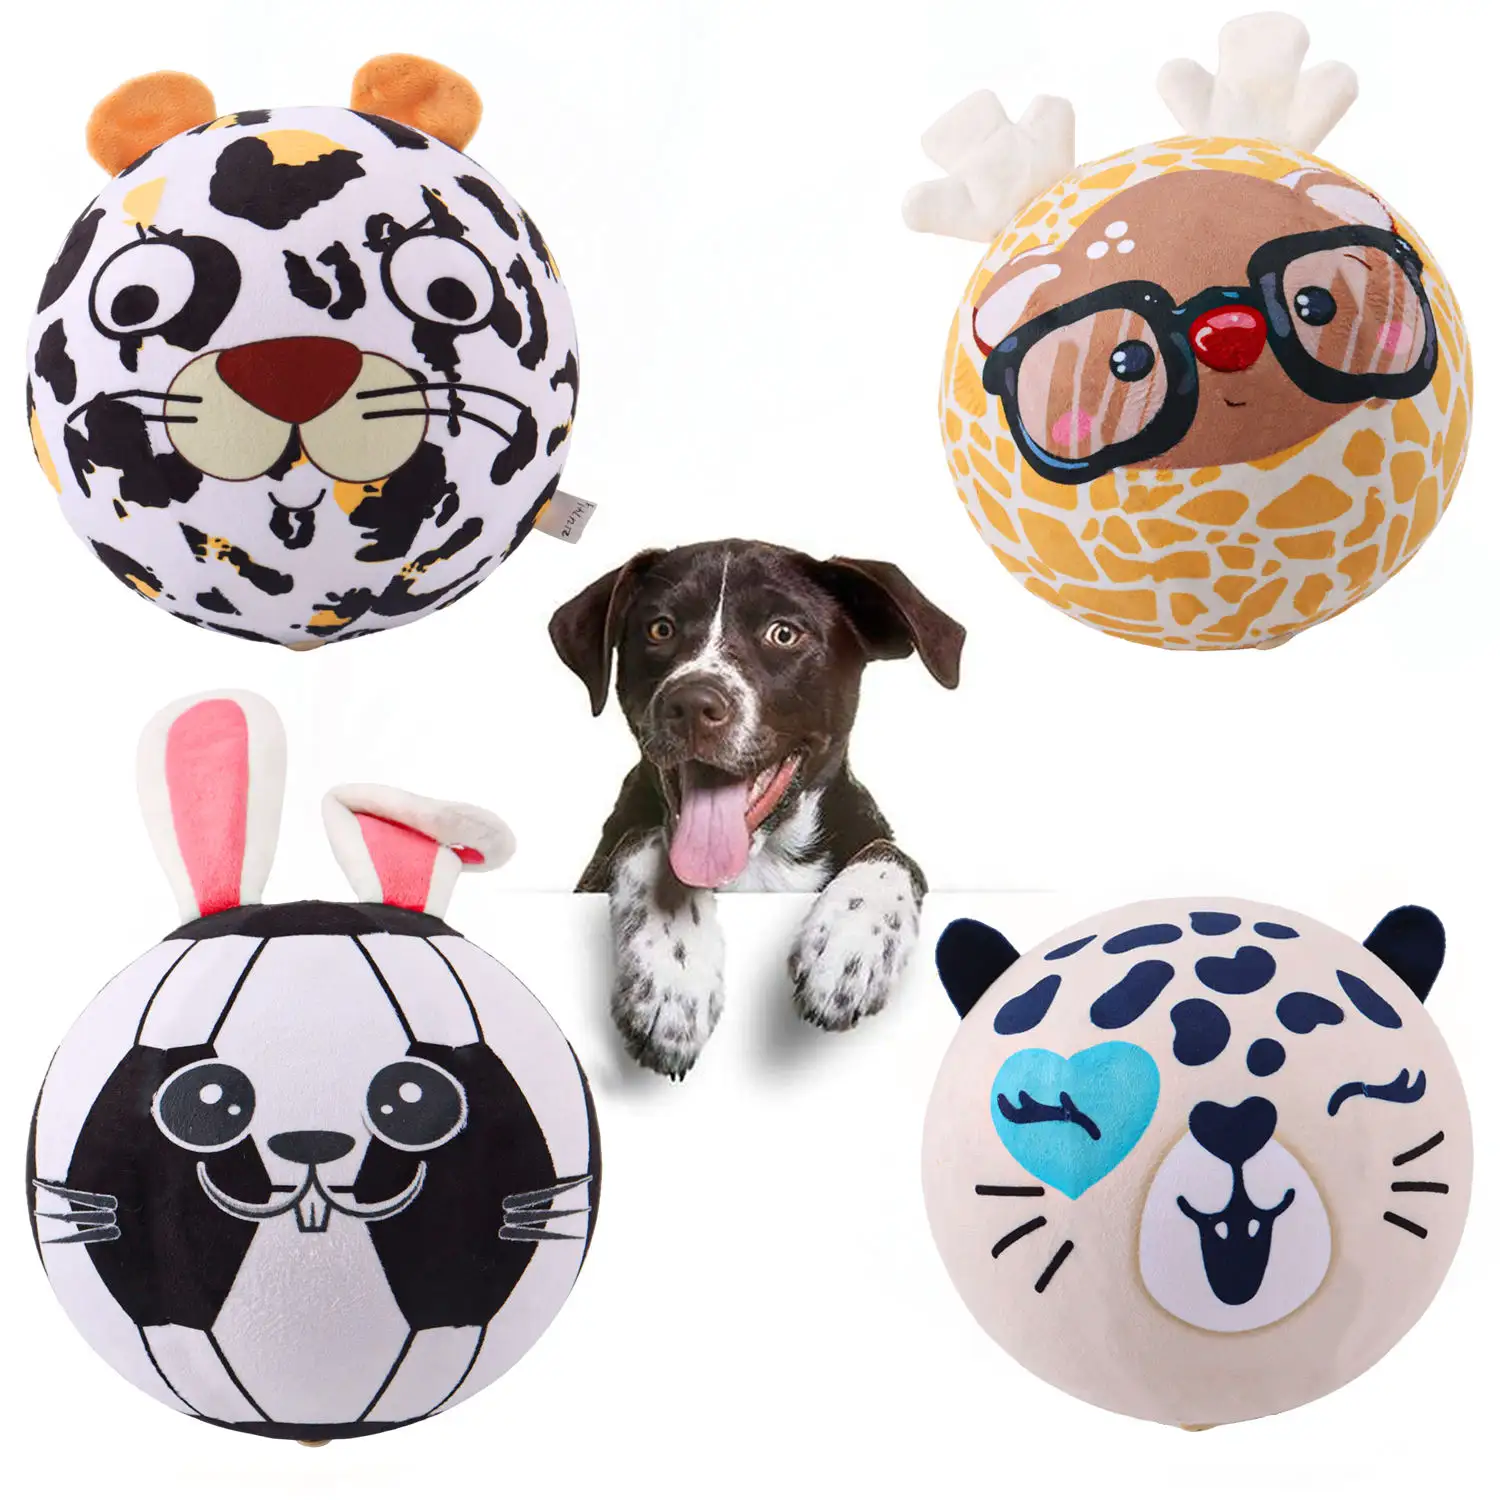 Köpek yumuşak kabarık topu gıcırtılı oyuncak topu orta küçük evcil çiğneme ve Fetching için interaktif köpek oyuncak